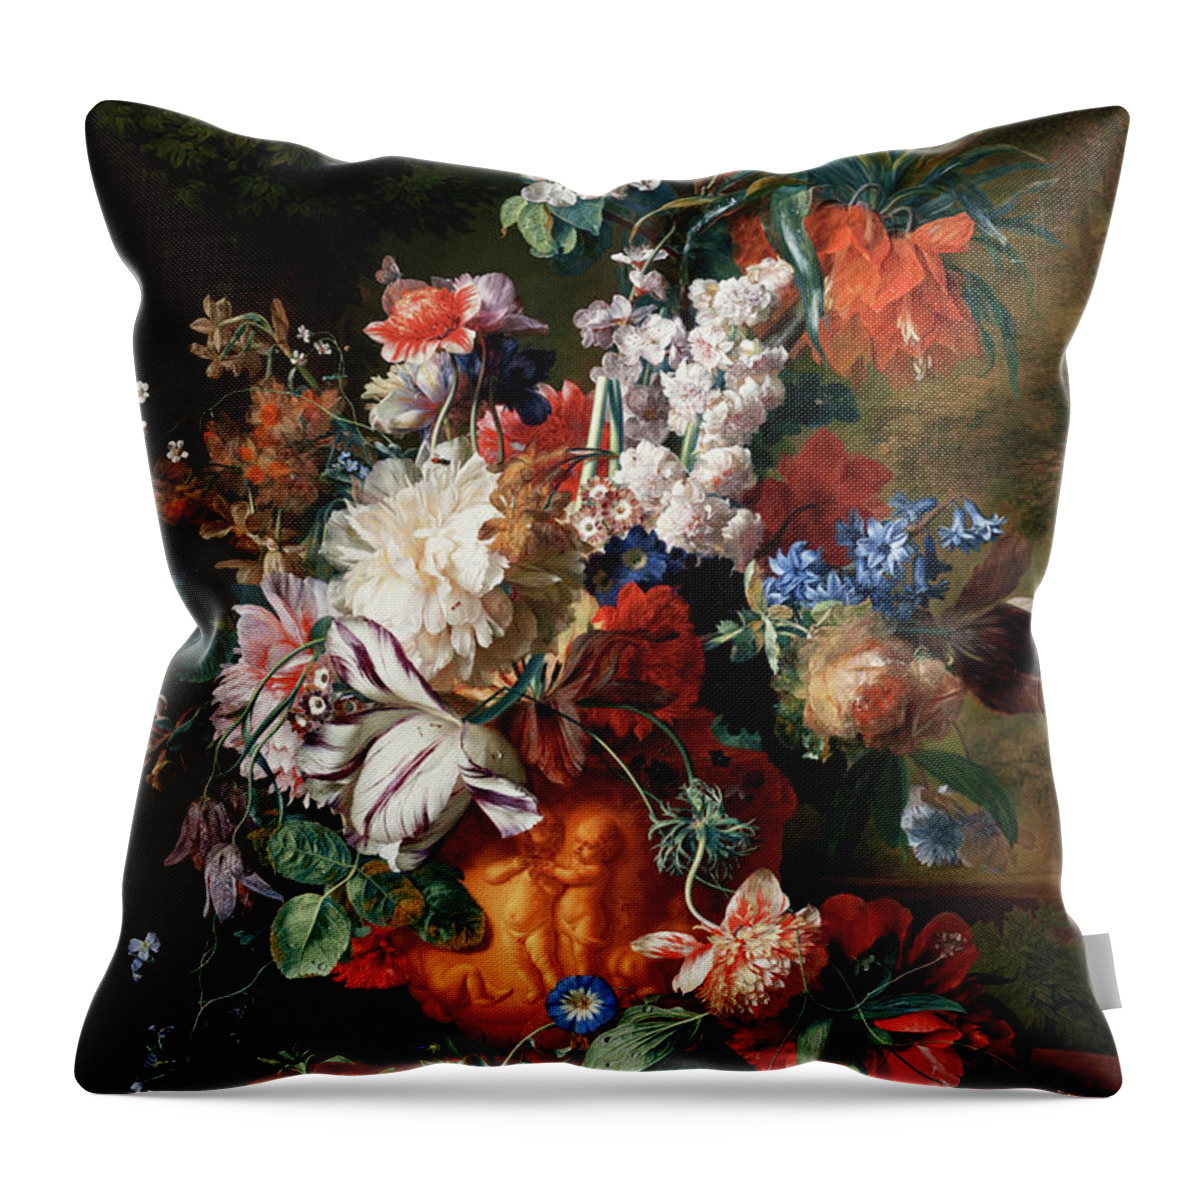 Bouquet Of Flowers In An Urn Throw Pillow featuring the painting Bouquet Of Flowers In An Urn by Jan van Huysum by Rolando Burbon